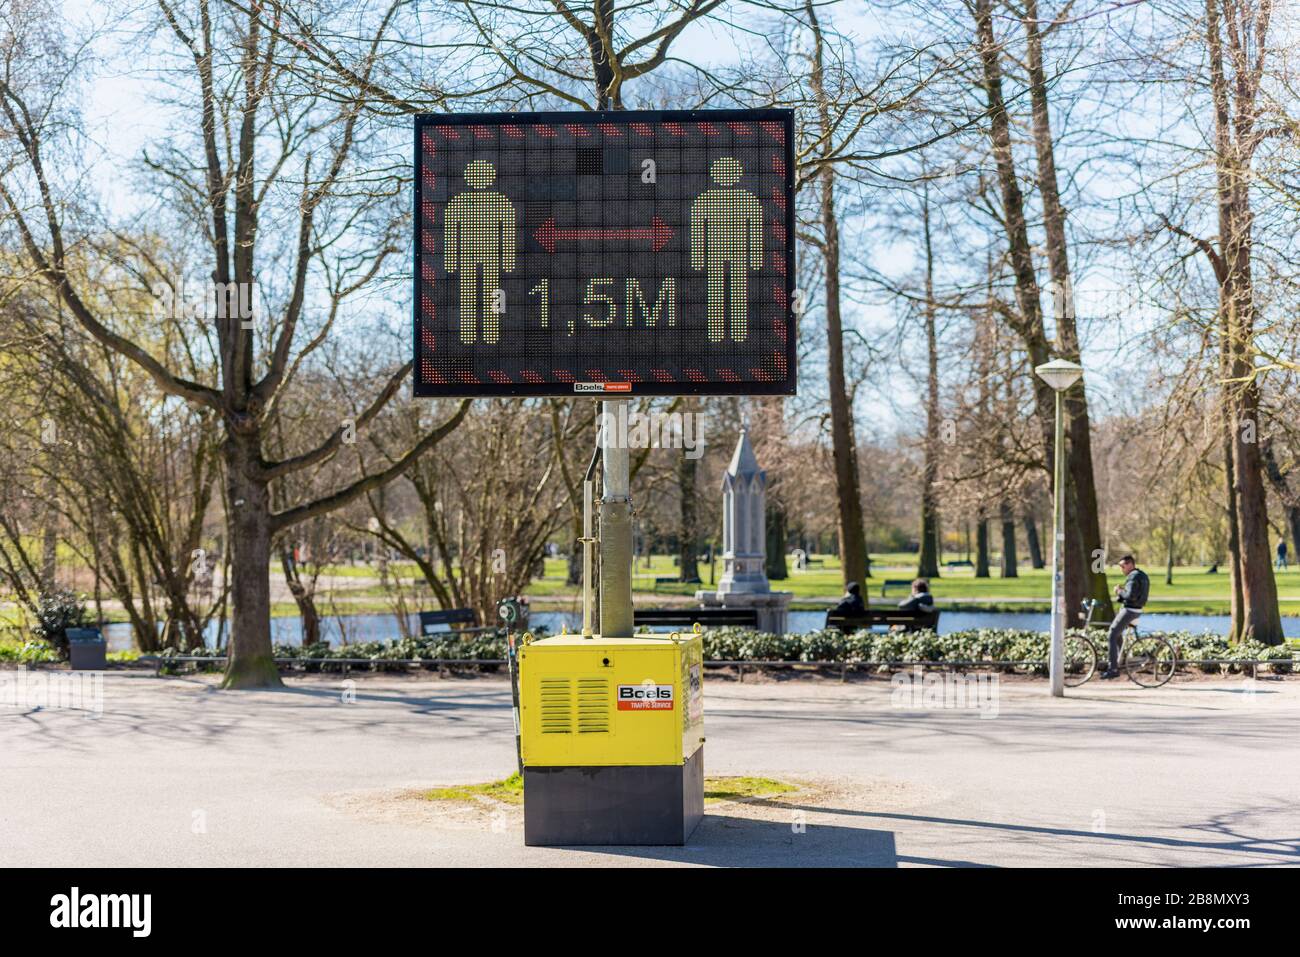 Abstand von 1,5 Meter halten Warnschild auf Digitalanzeige in einem öffentlichen Park, erinnert Menschen an soziale Distanzierung und vermeidet die Ausbreitung des Coronavirus Stockfoto